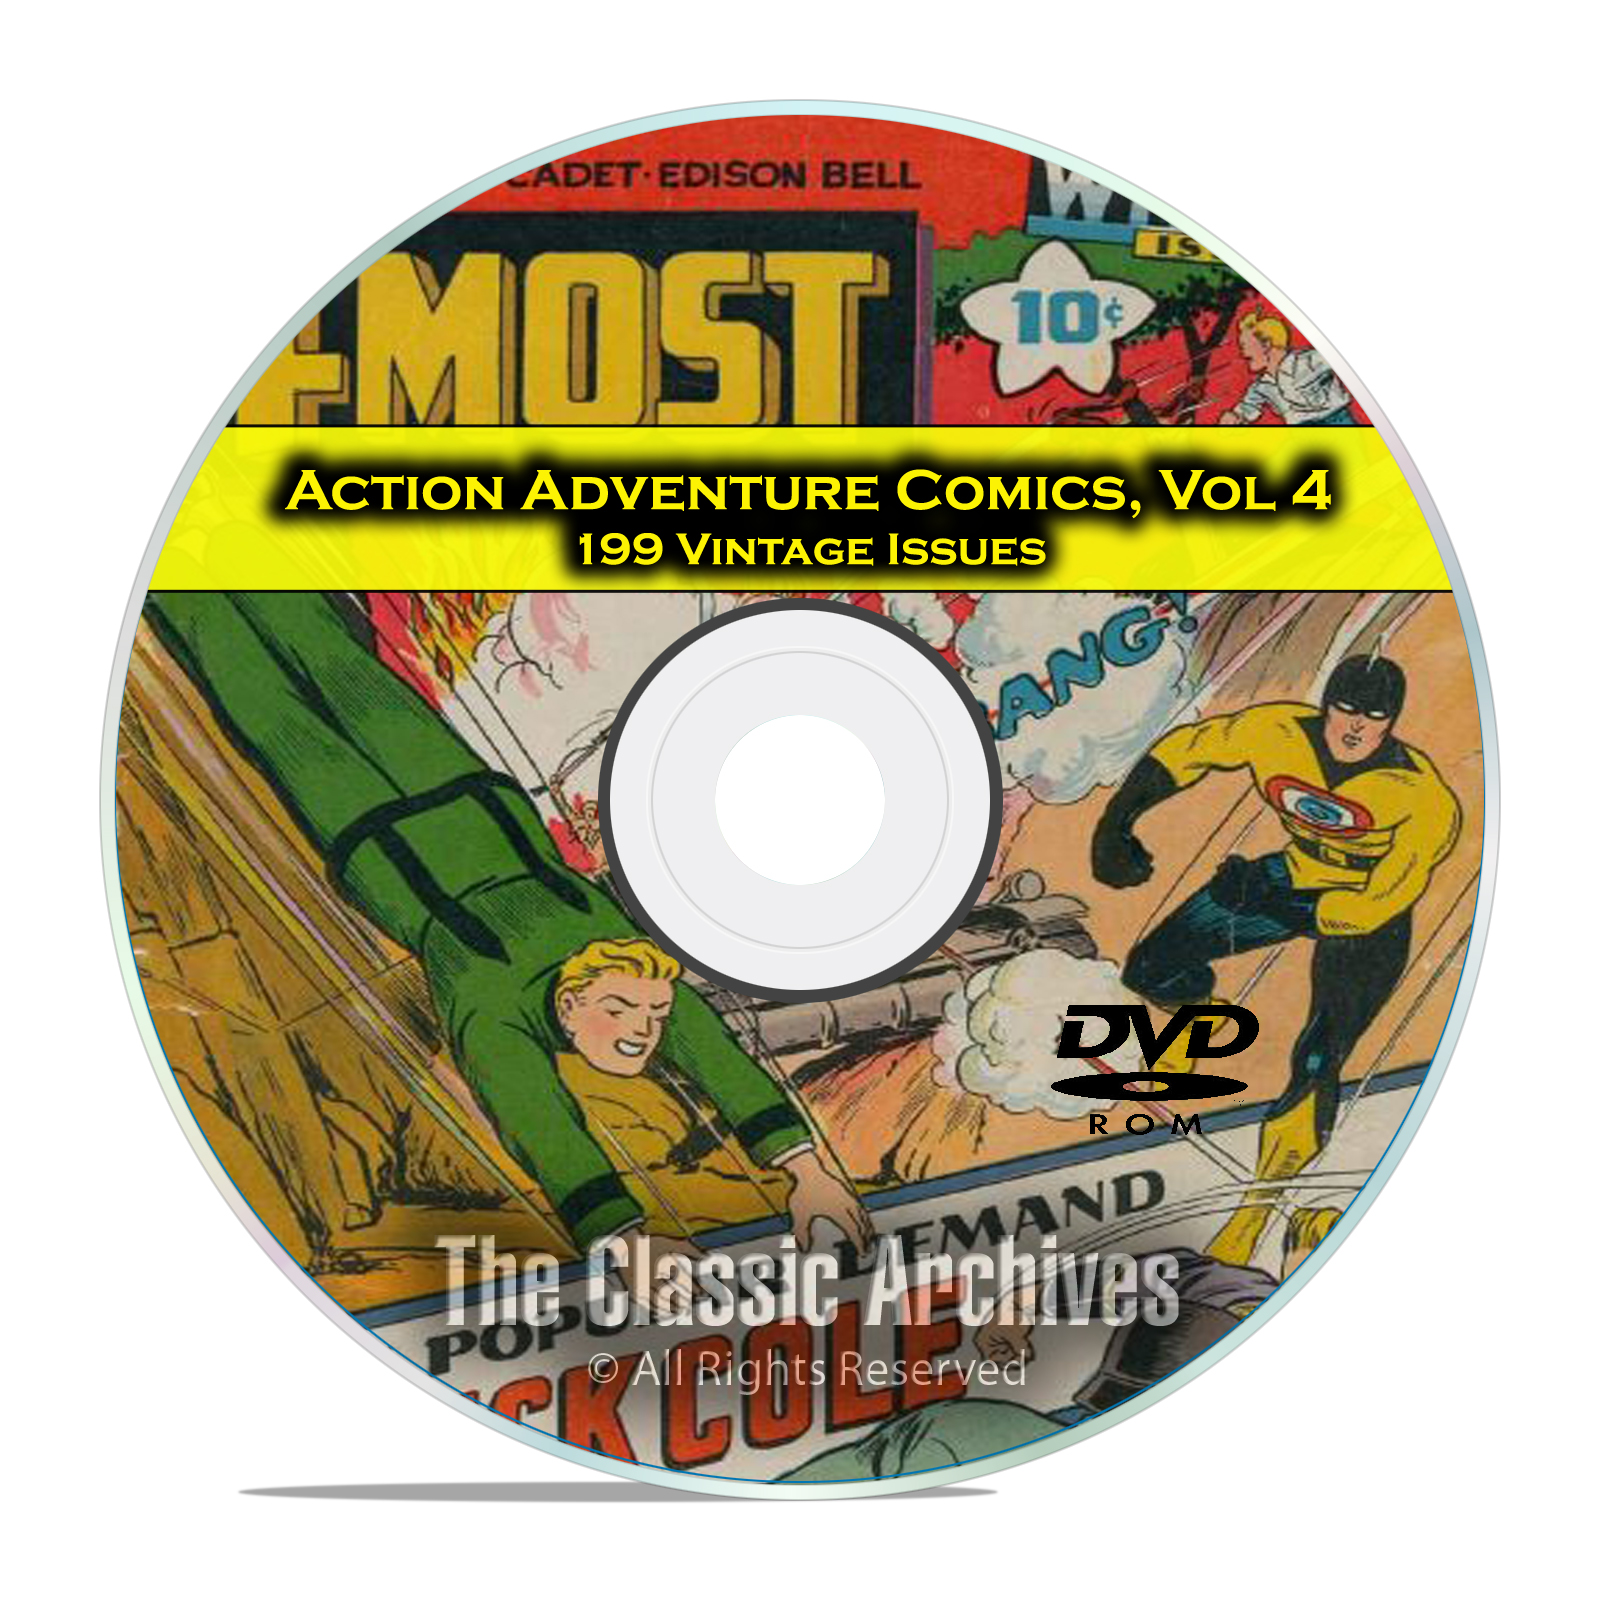 Action Adventure Comics Vol 4, Blue Bolt Picture News 4 Most Golden Age DVD